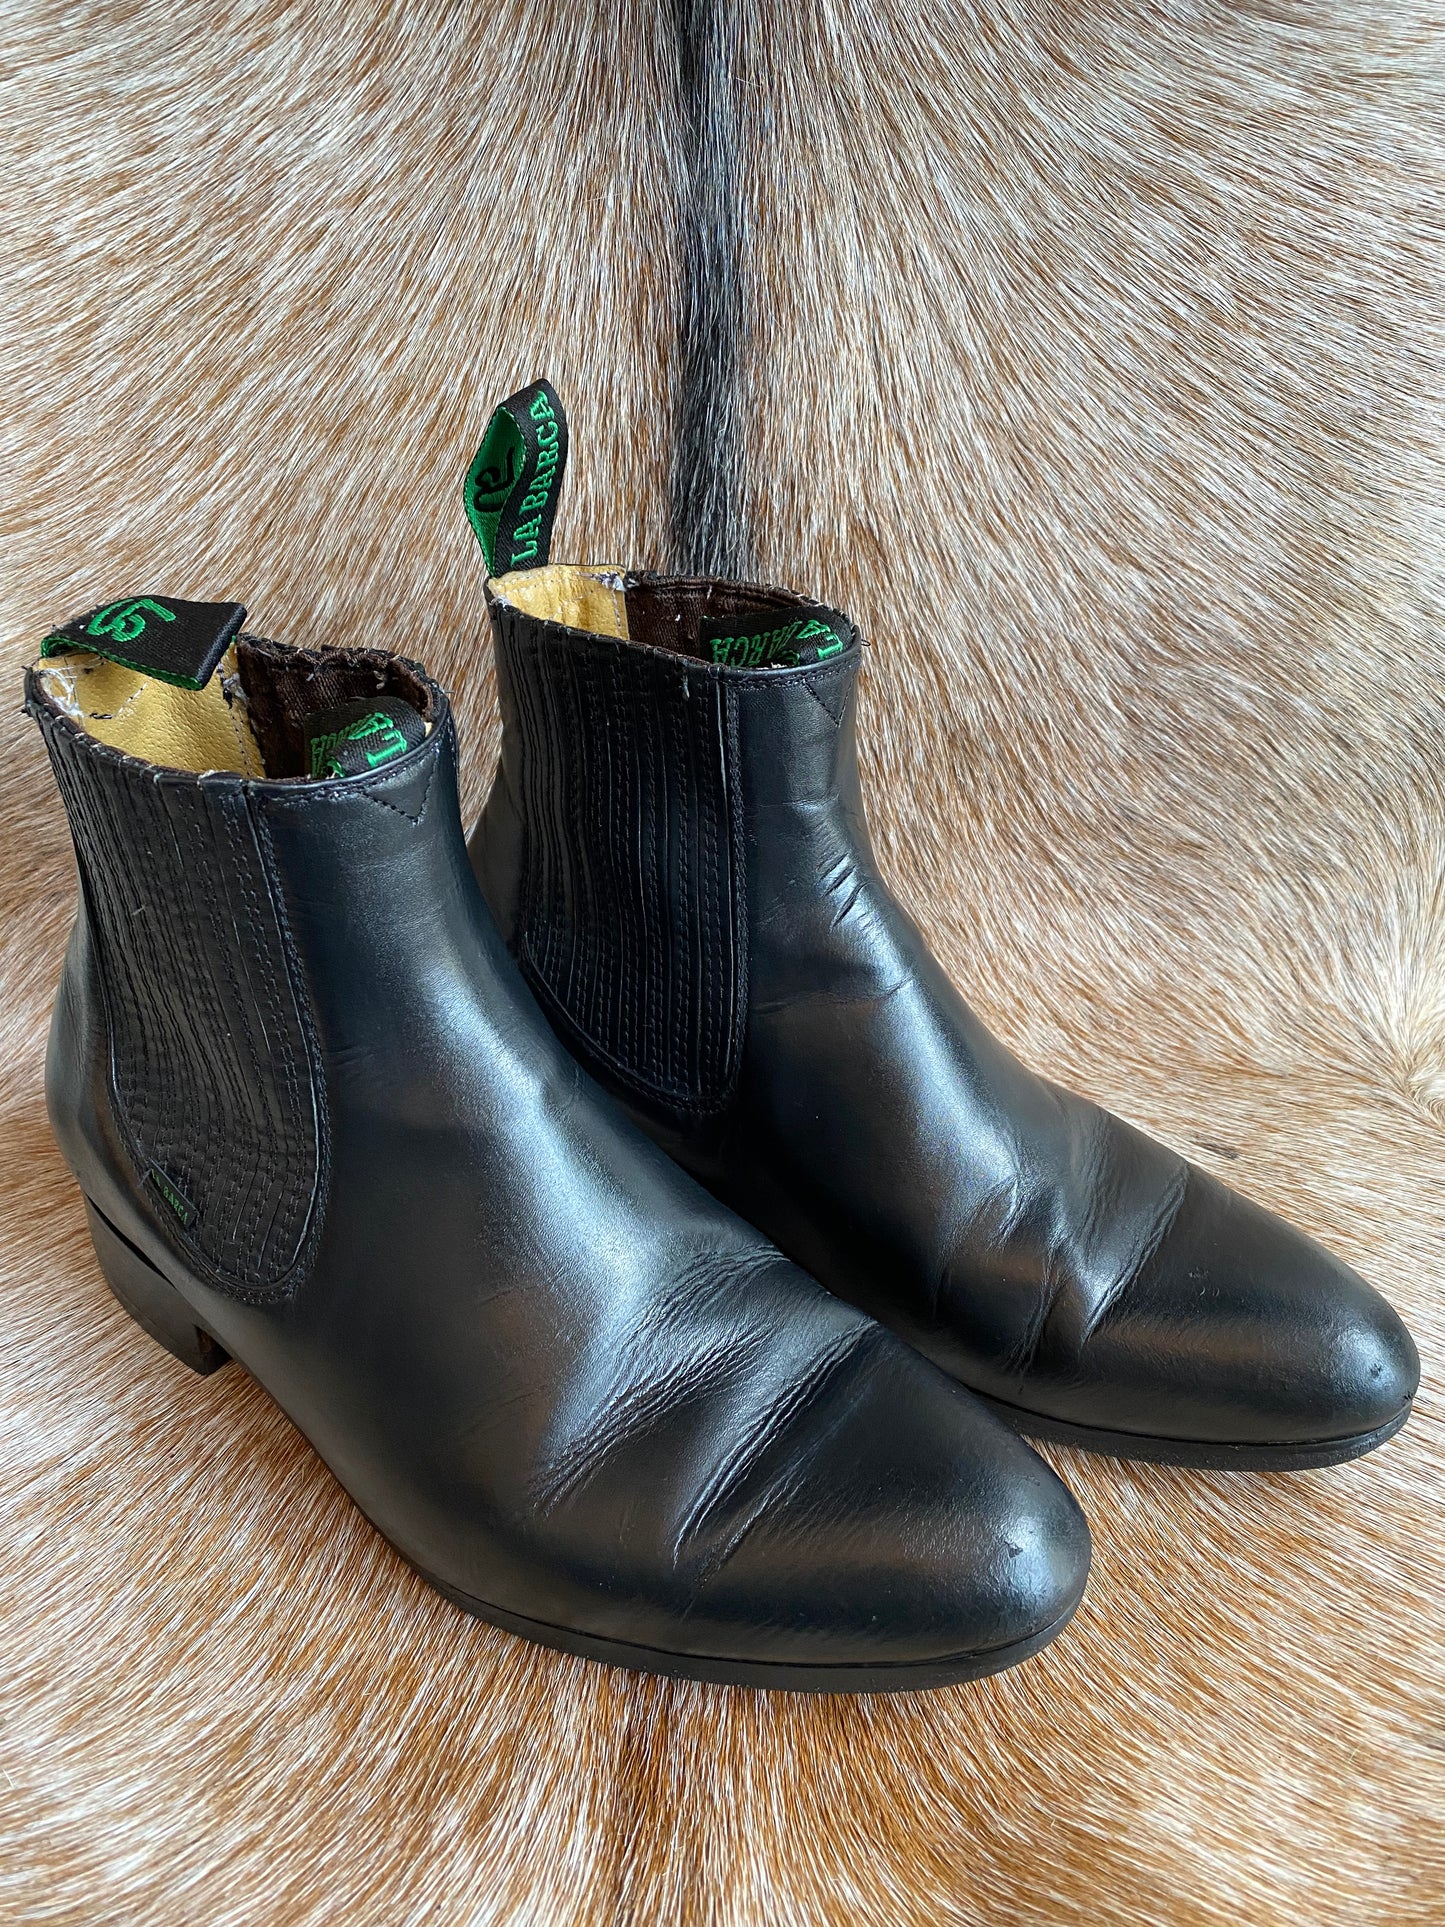 Vintage La Barca Leather Ankle Boots